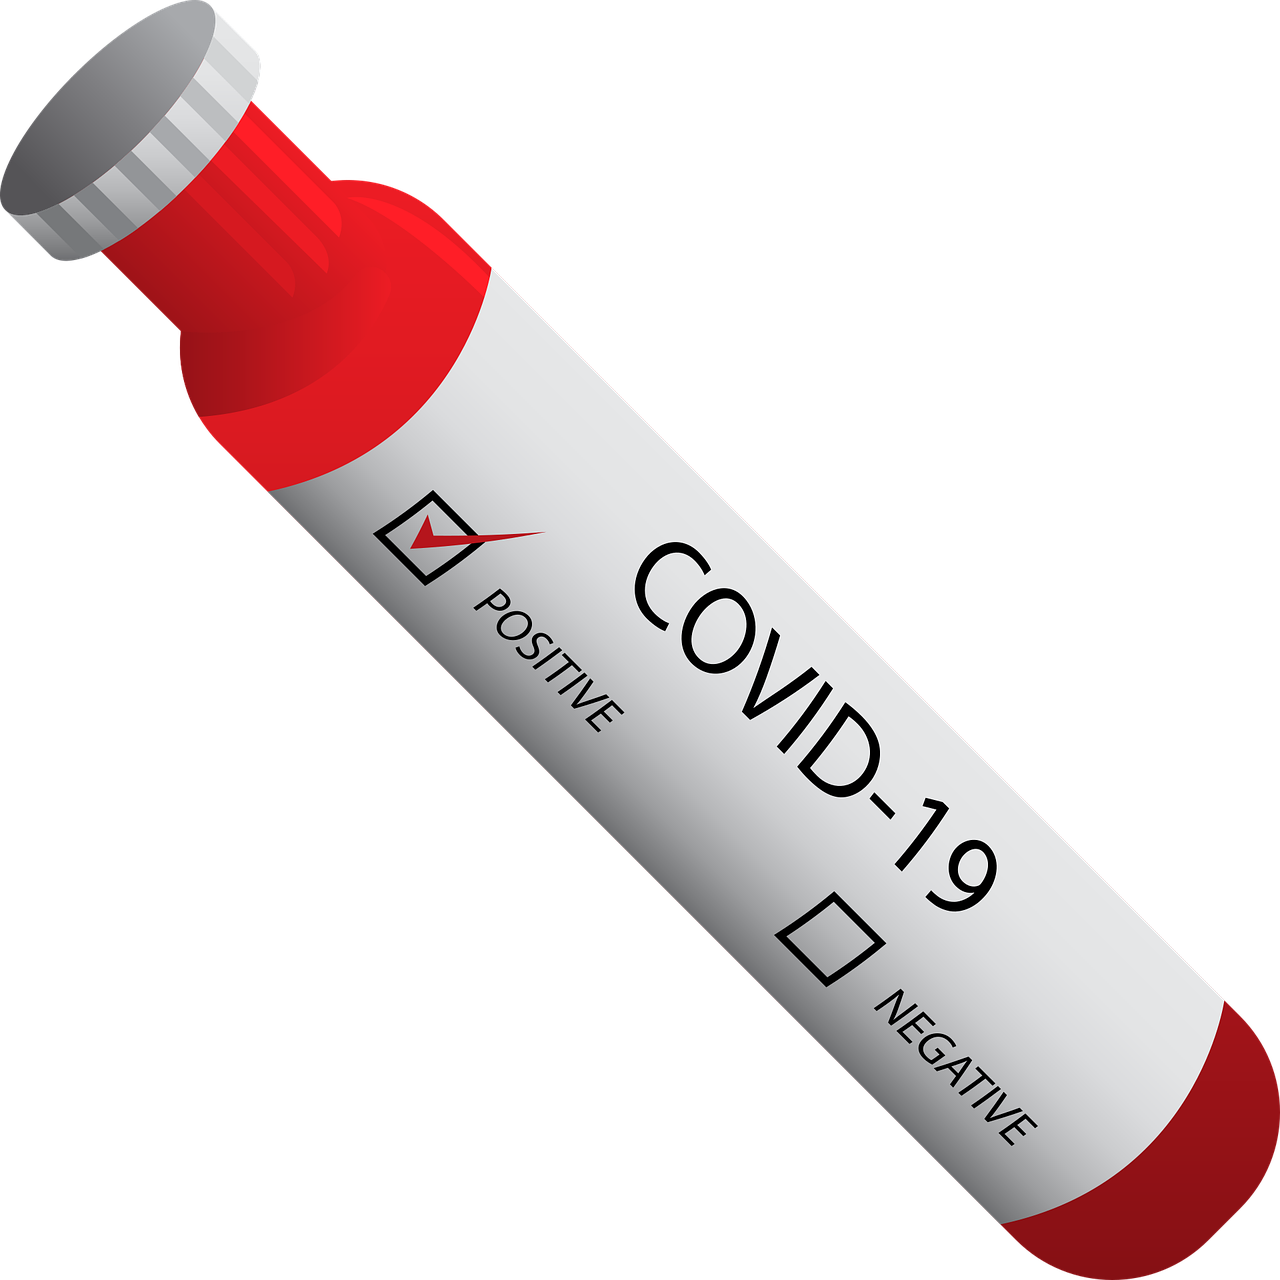 Nouveau coronavirus, COVID-19 positif